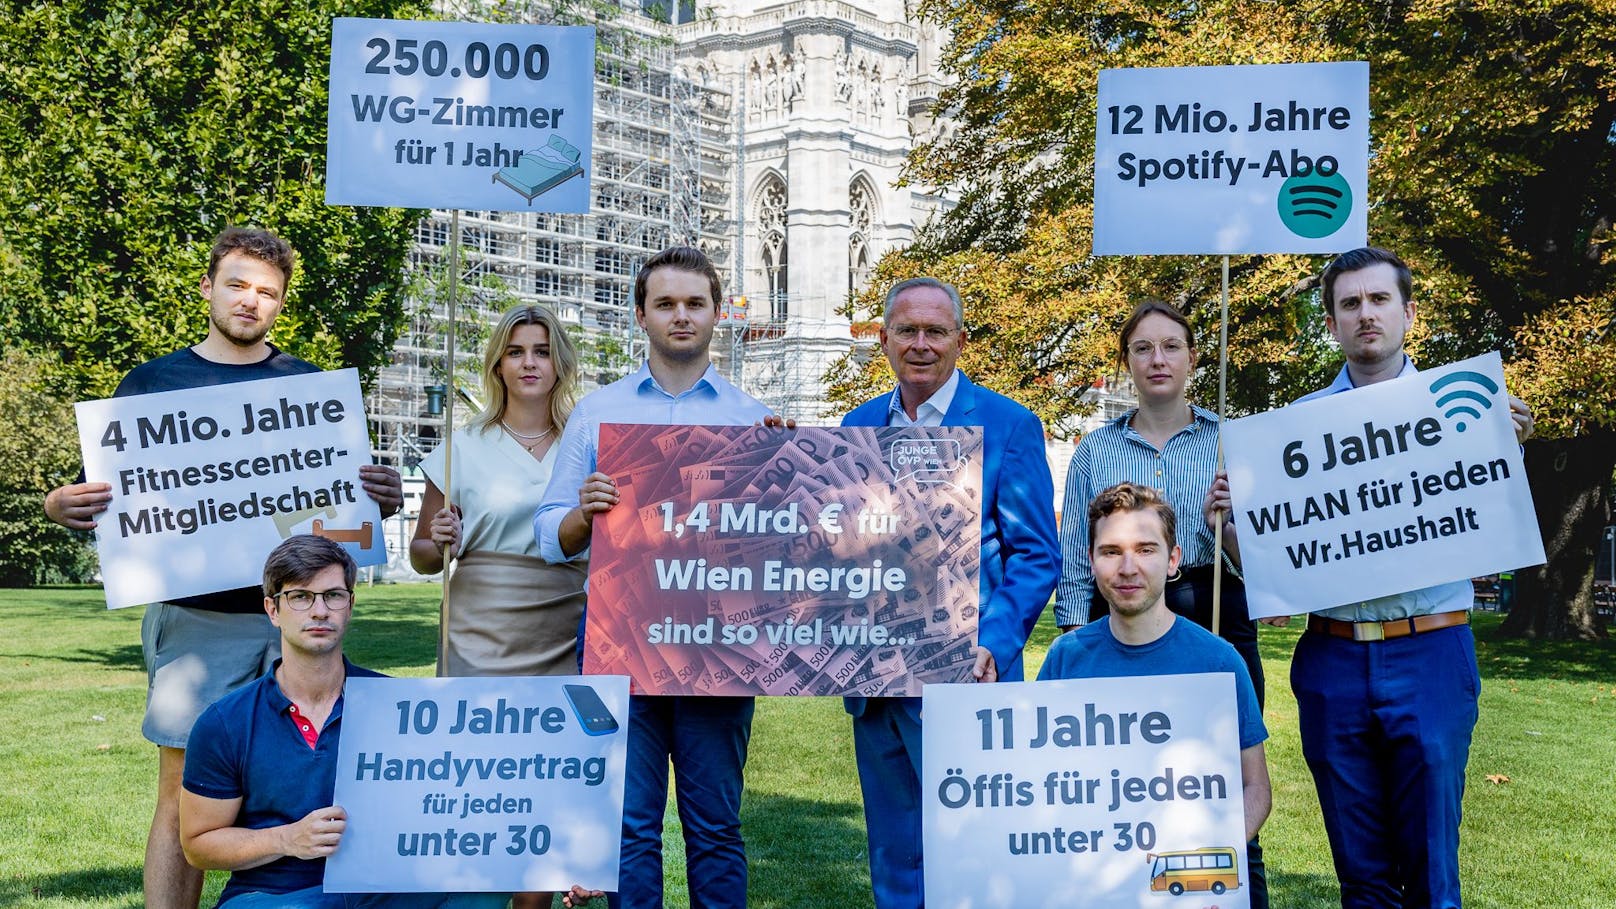 Die Junge ÖVP mit VP-Chef Karl Mahrer und JVP-Chef Harald Zierfuß (m.) rechnet vor, was man alles um 1,4 Milliarden Euro bekommt.